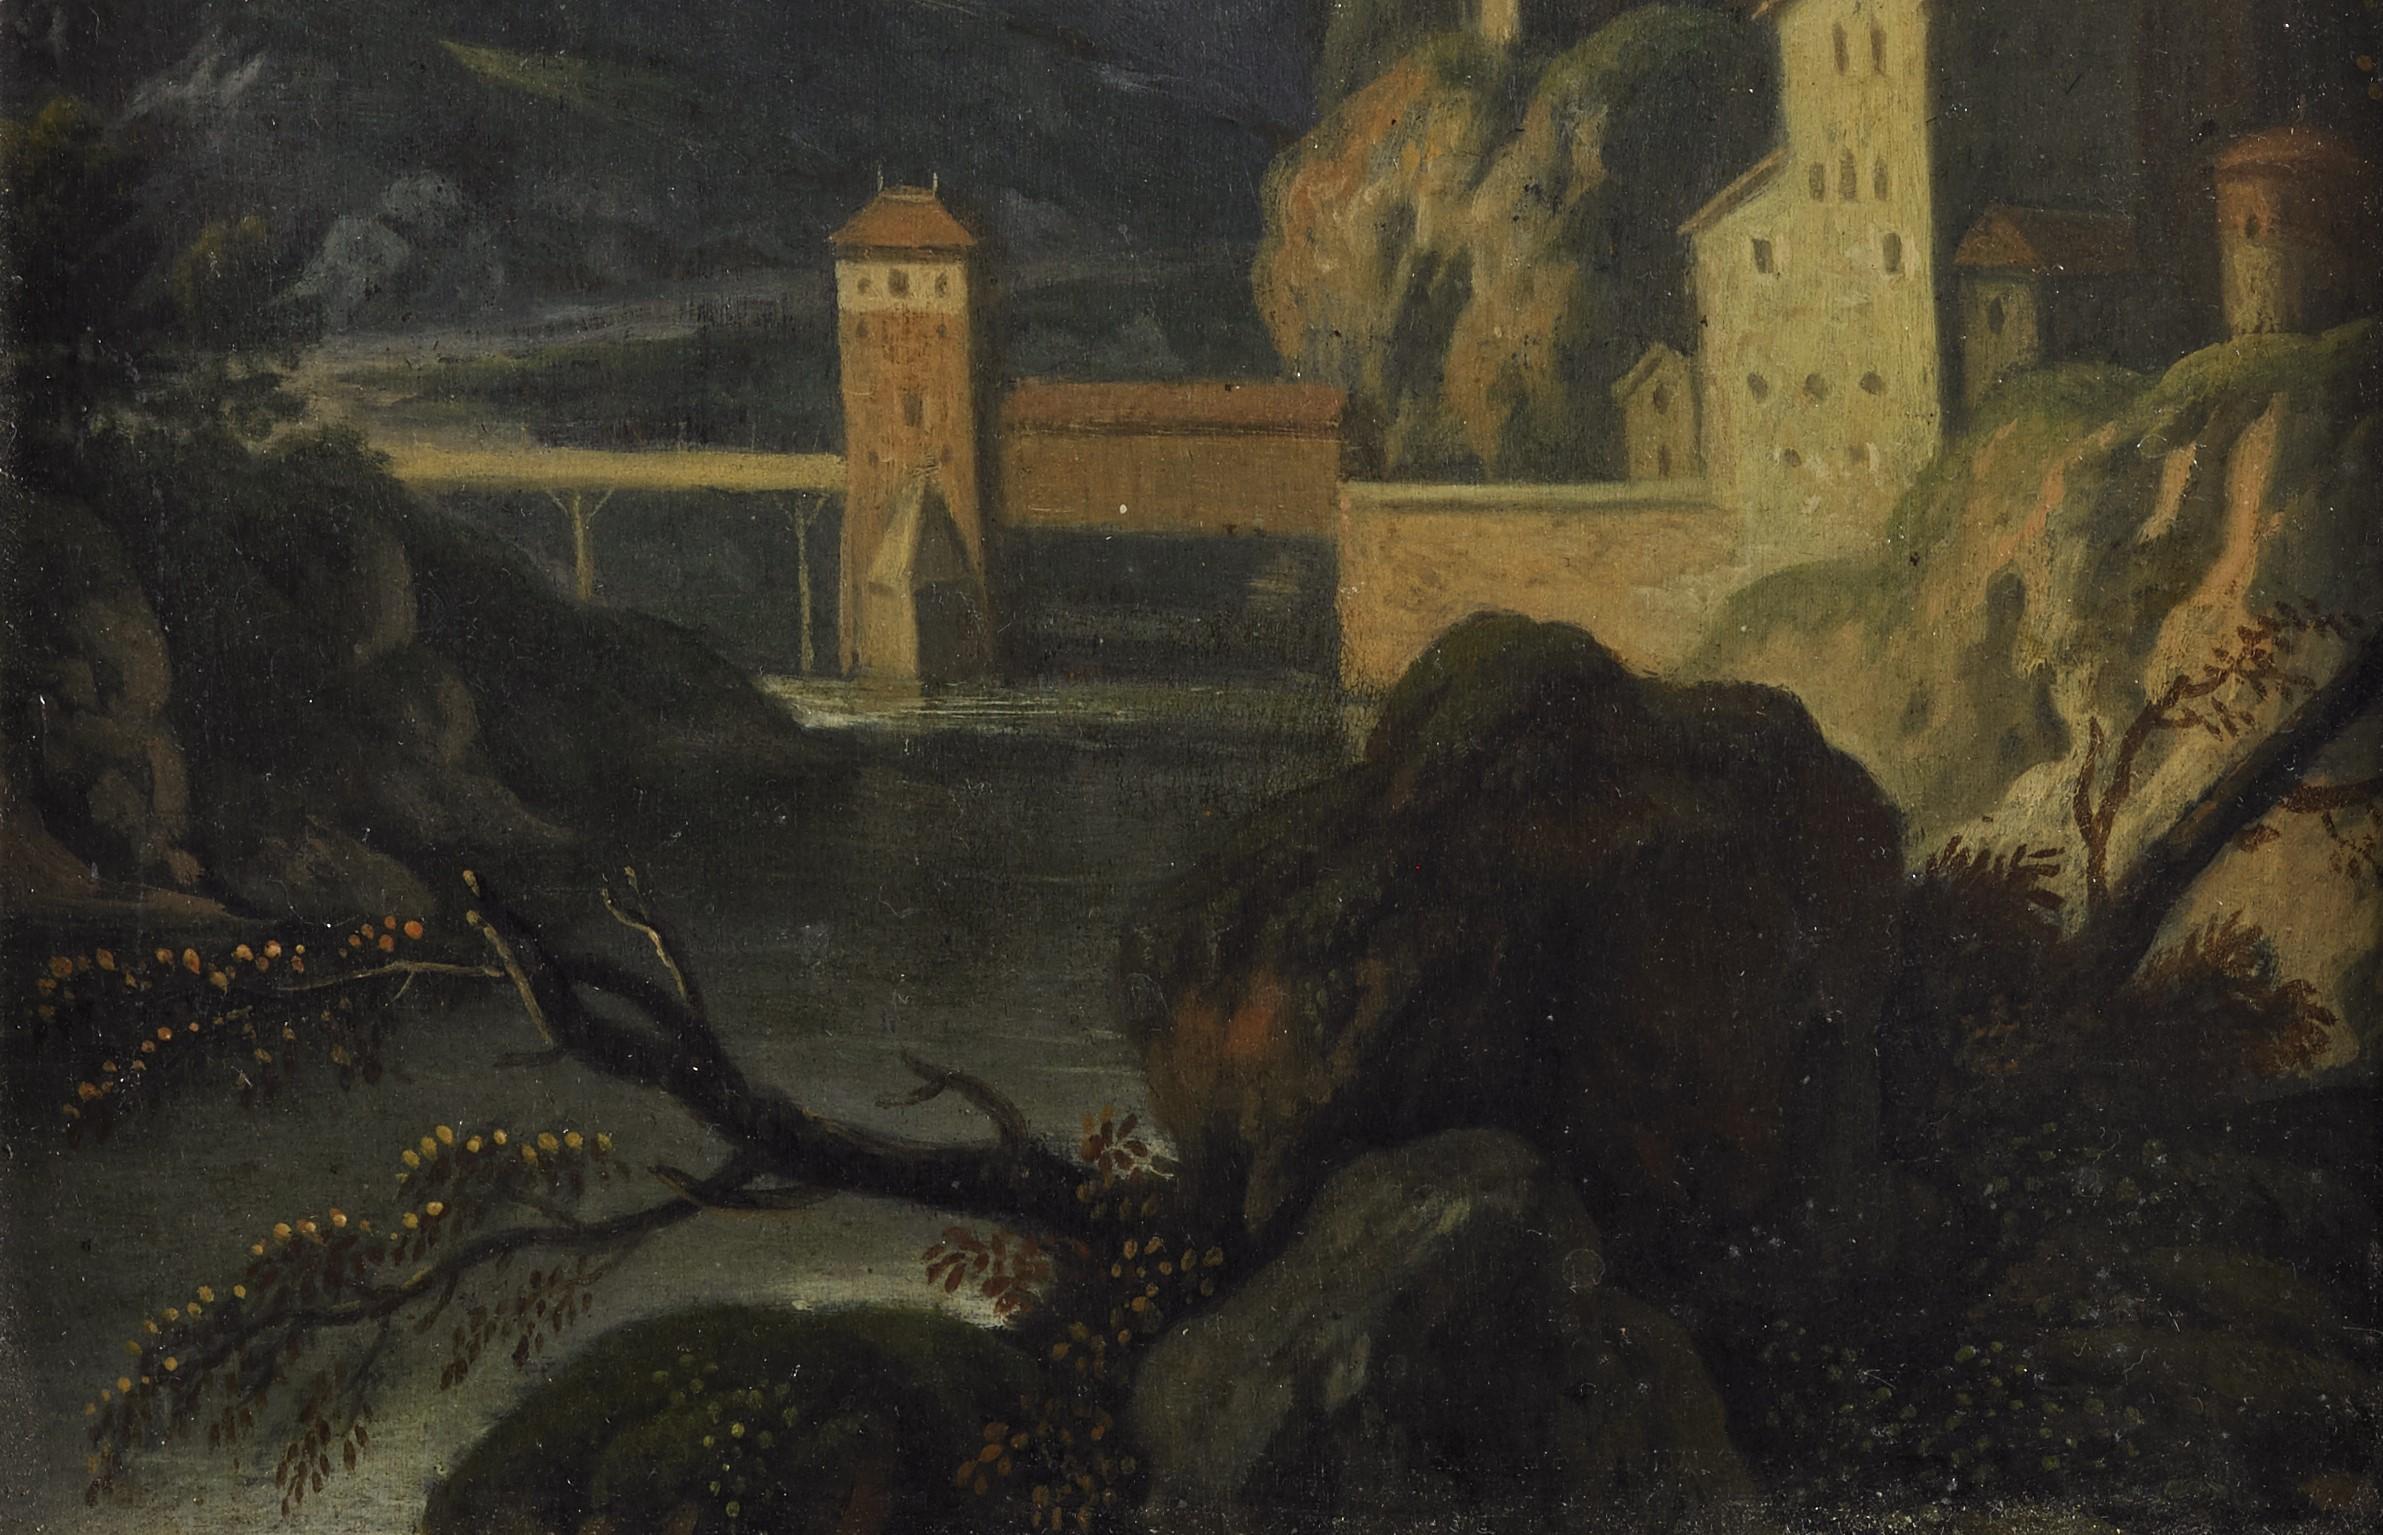 Peinture, huile sur panneau, mesurant 20 x 15 sans cadre et 35 x 30 avec cadre, représentant un paysage avec une belle perspective et des maisons disposées sur une montagne de l'école flamande du milieu du 17e siècle.

Les peintures et les œuvres